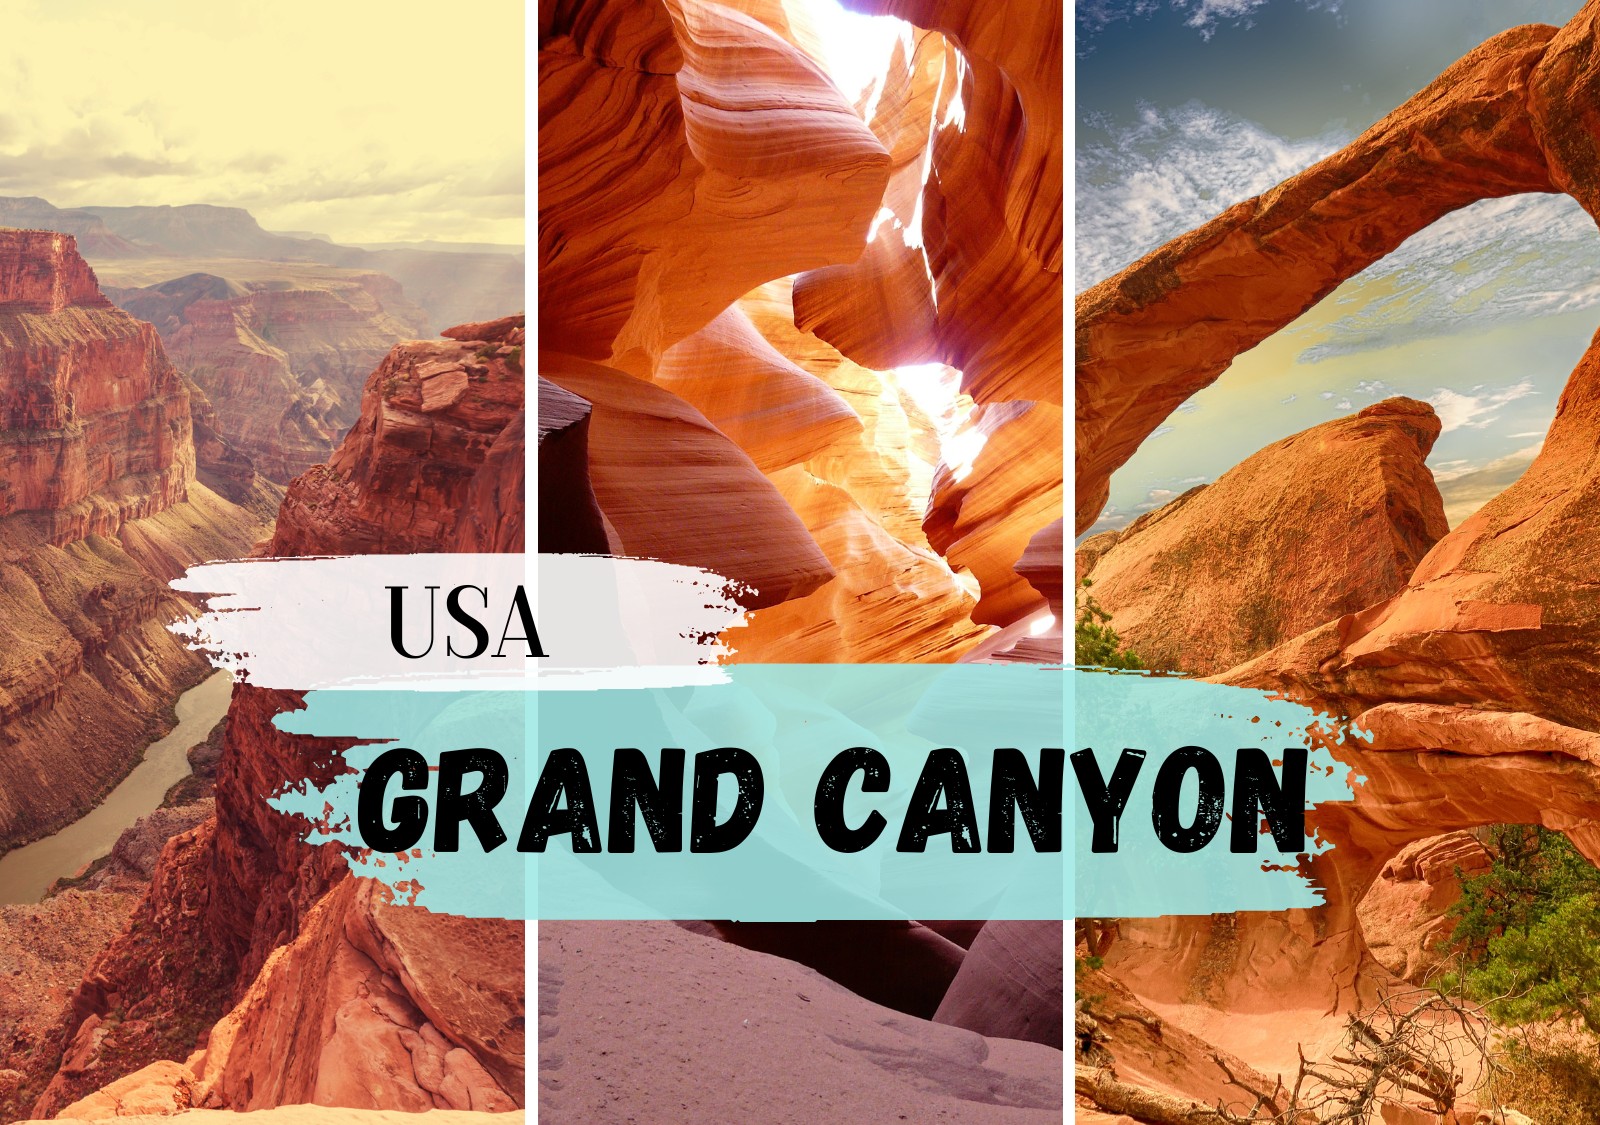 Grand Canyon Steckbrief - Geografie und Geologie